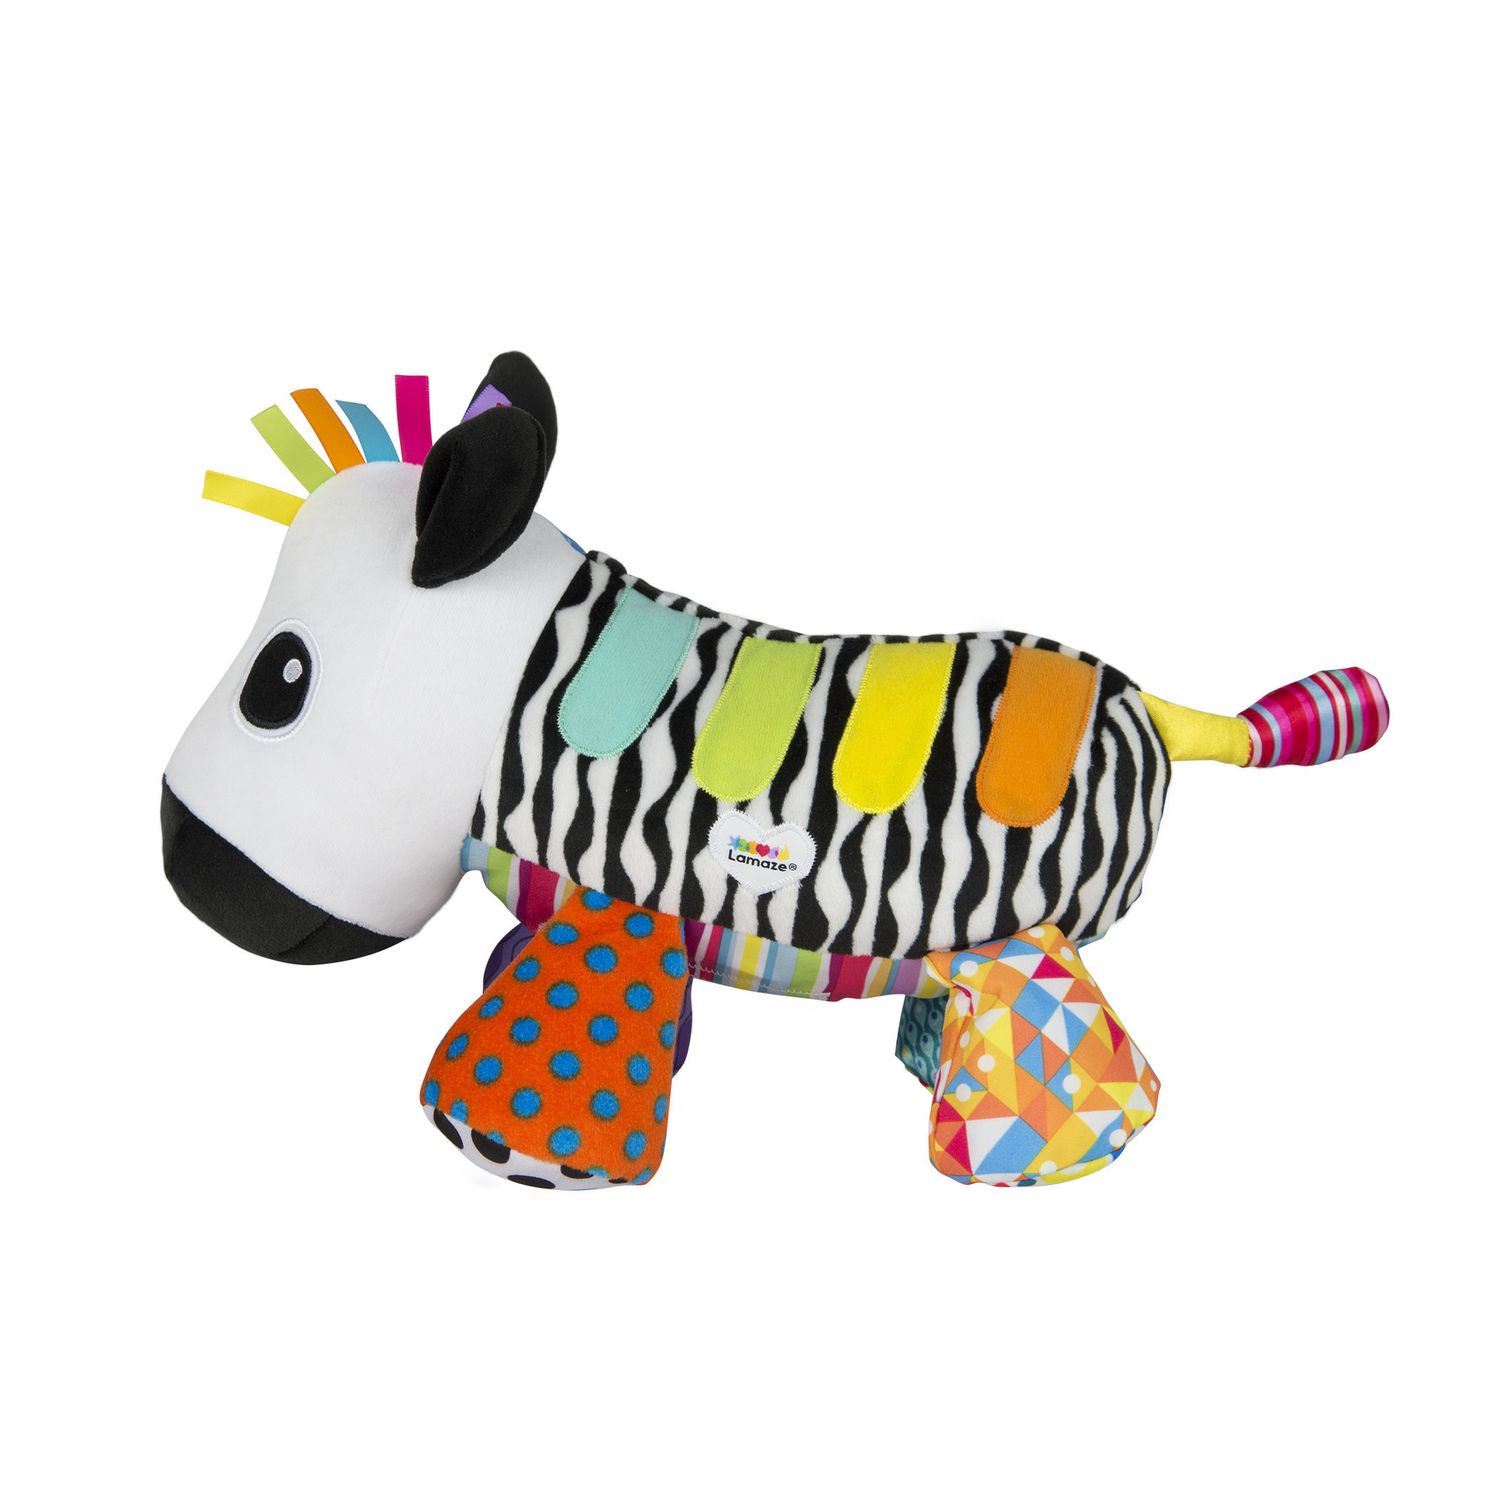 zebra baby toy